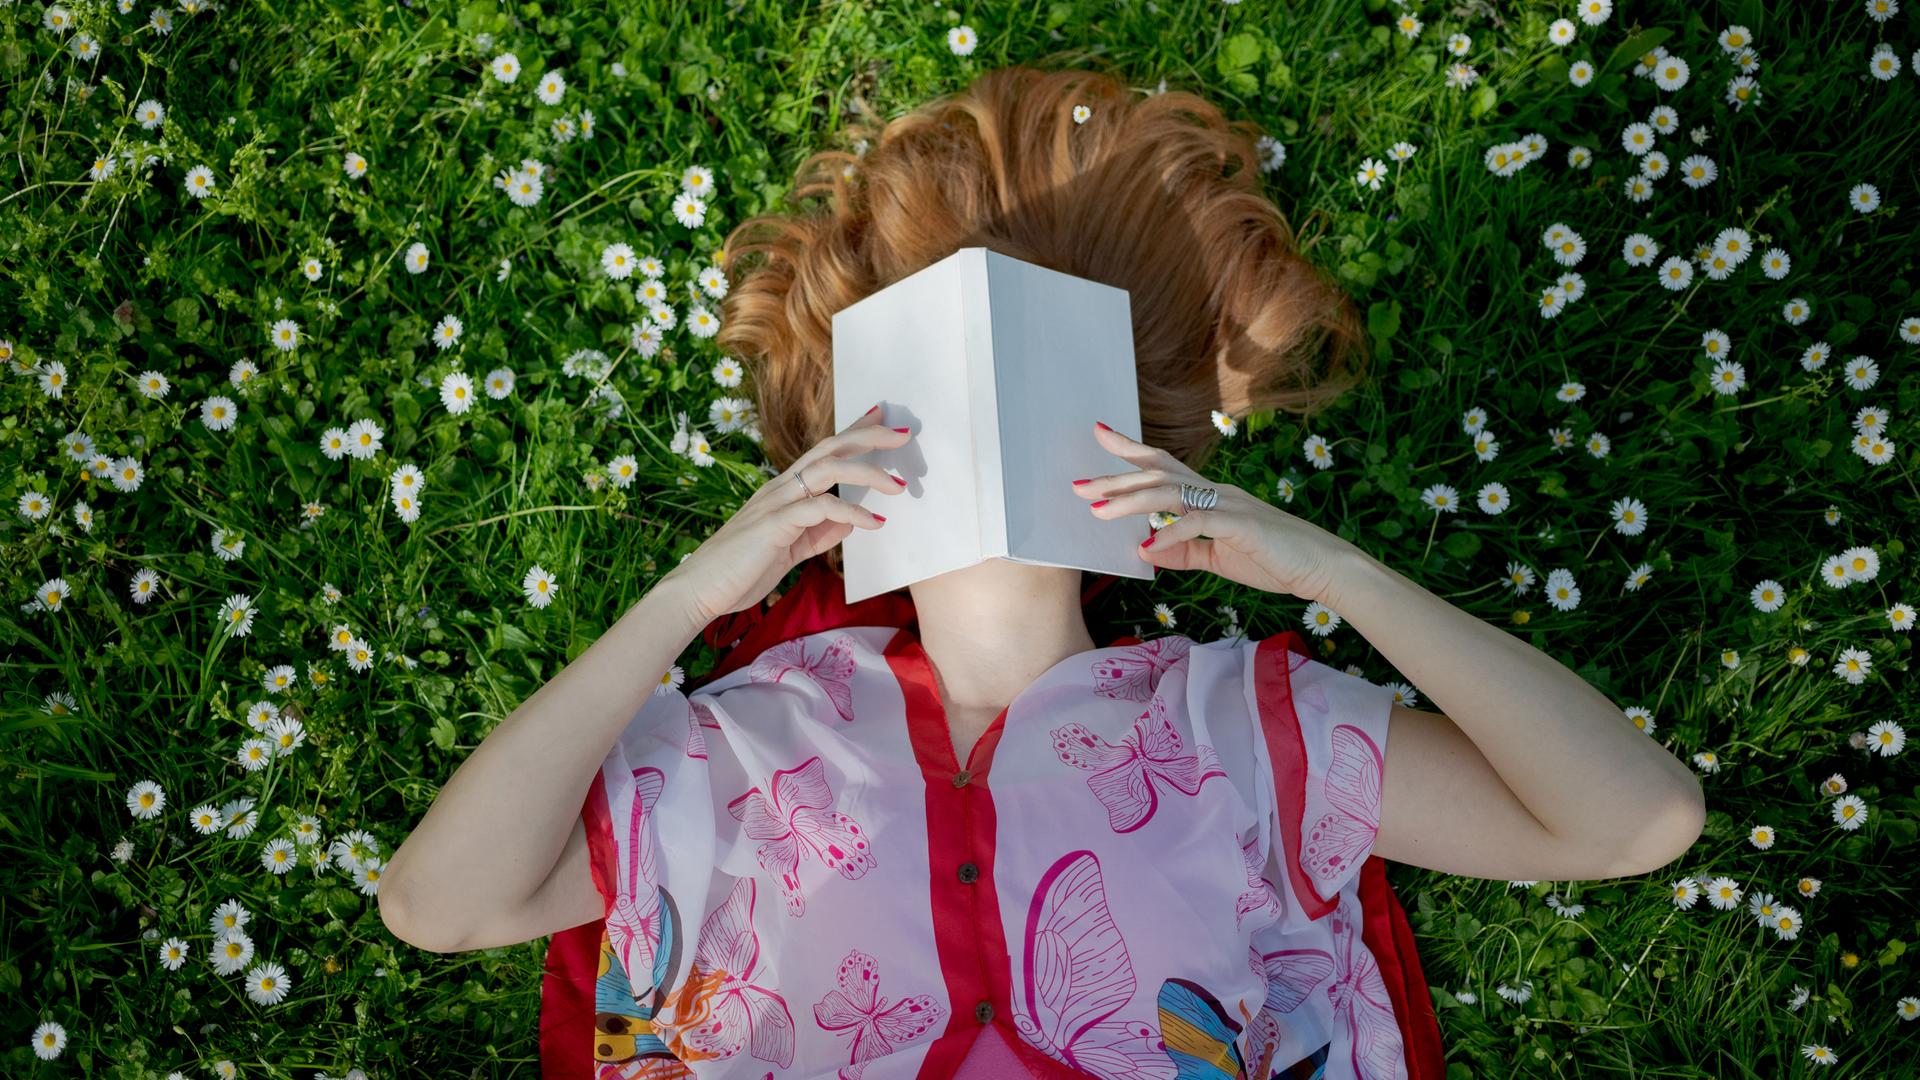 Eine Frau liegt im bunten Kleid auf einer Wiese voller Gänseblümchen und hält ein aufgeschlagenes Buch über ihr Gesicht.